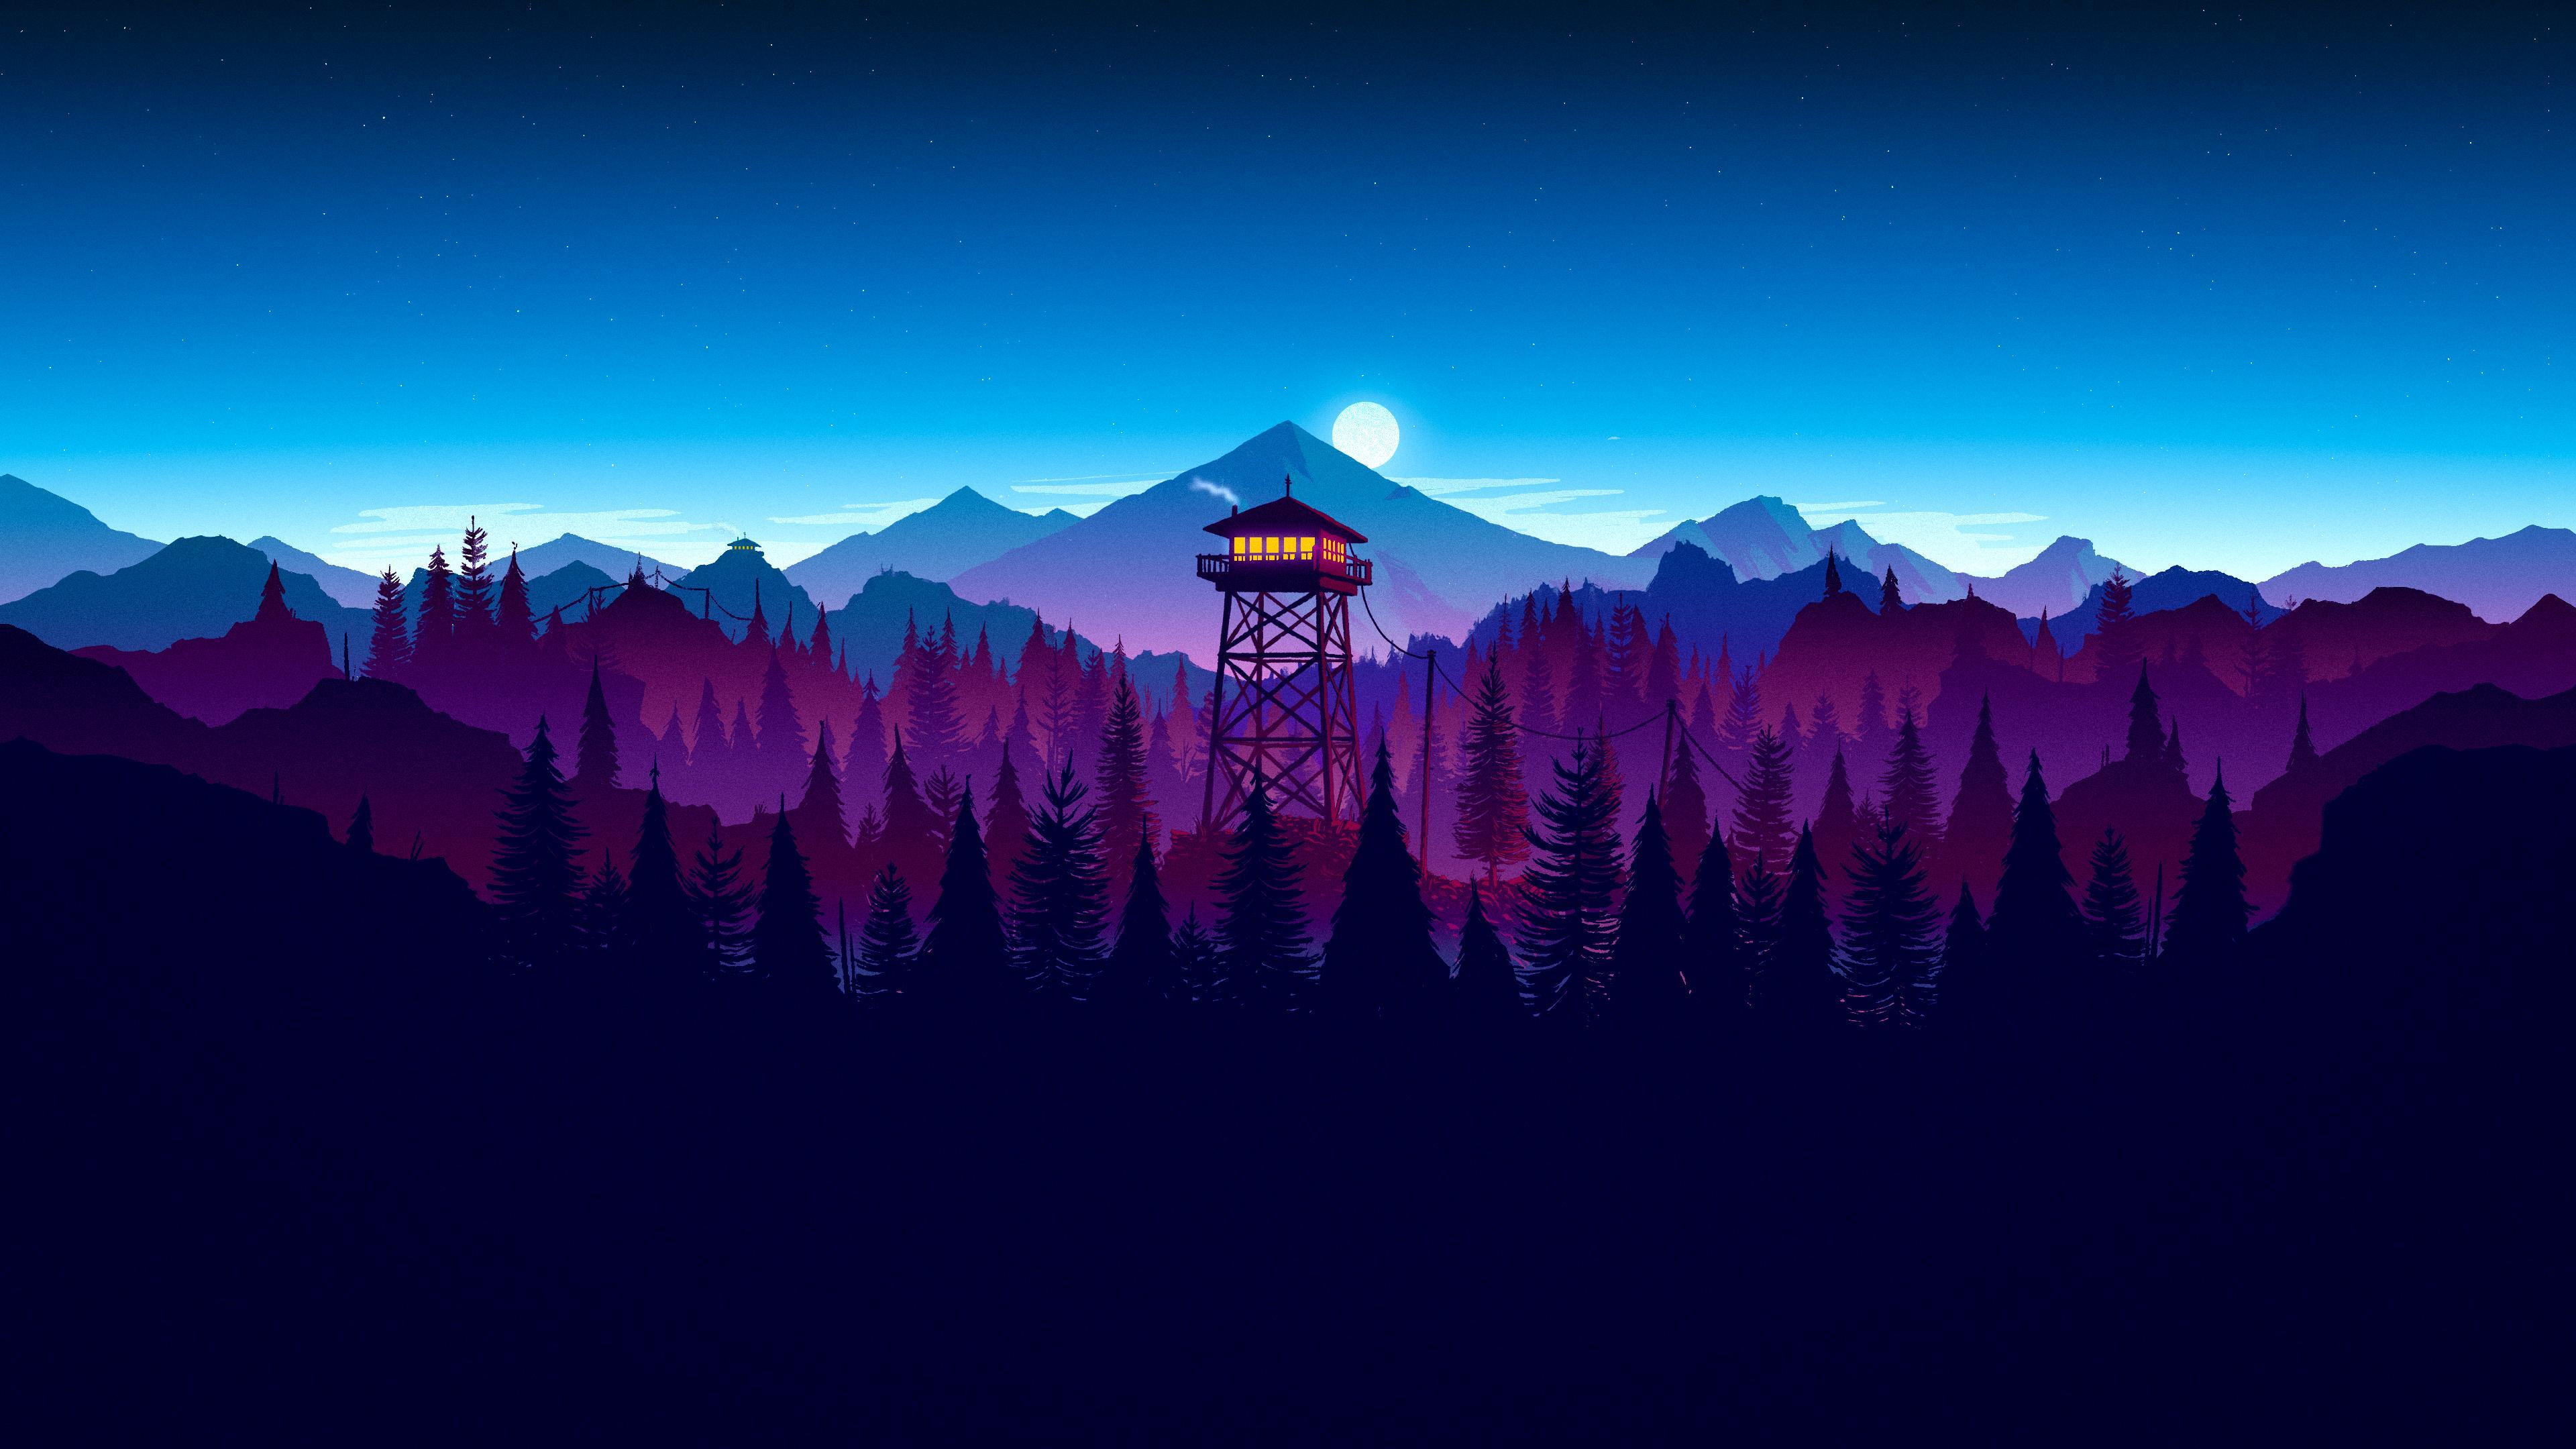 Firewatch Sunset Artwork, HD Artist, 4k Wallpaper, Image